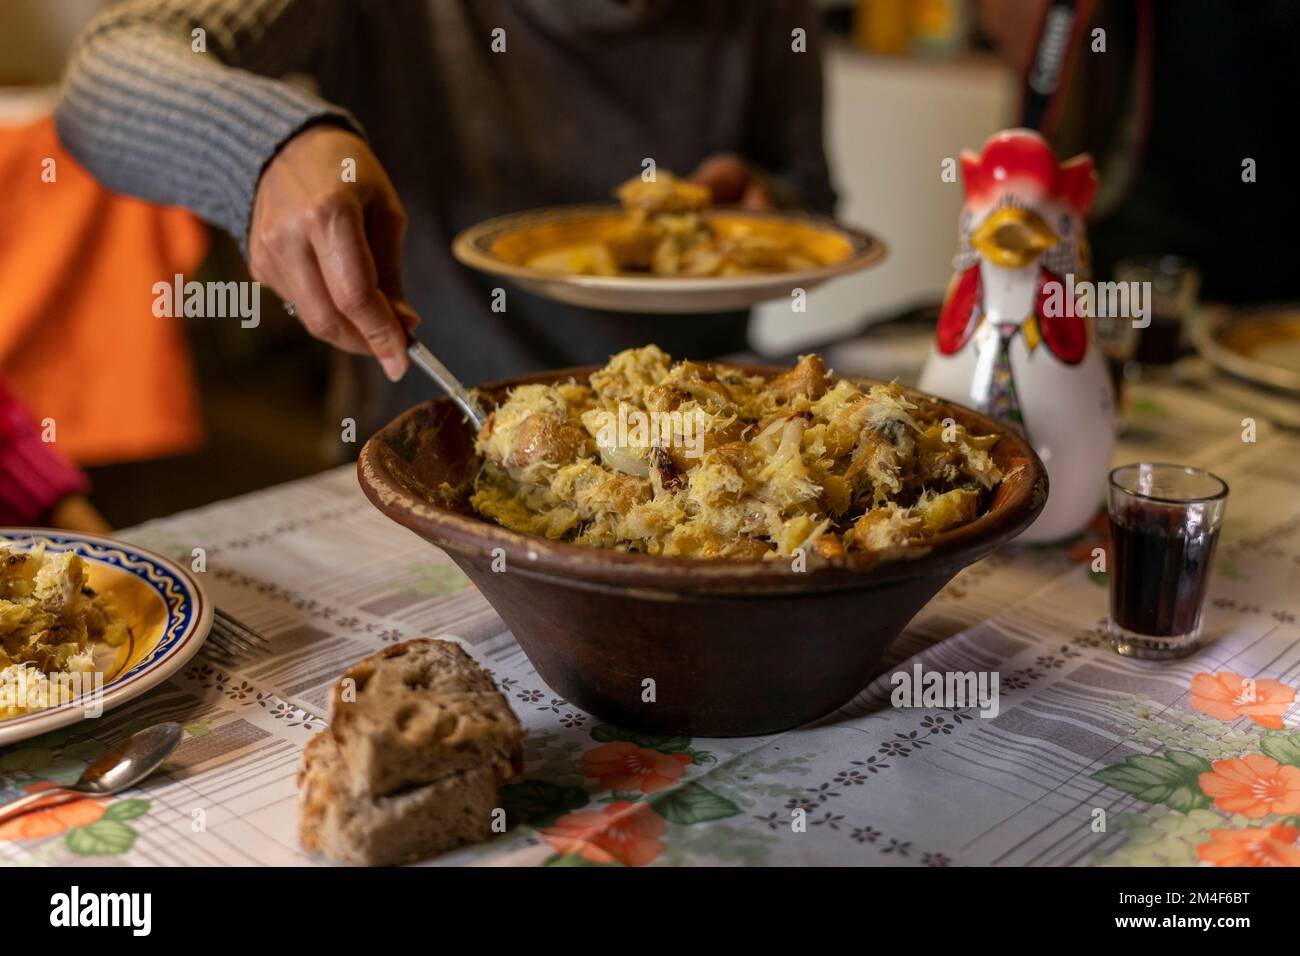 Persona che serve un tipico piatto portoghese con pesce merluzzo, olio d'oliva e patate servito in una pentola di argilla su un tradizionale tavolo da pranzo rustico Foto Stock